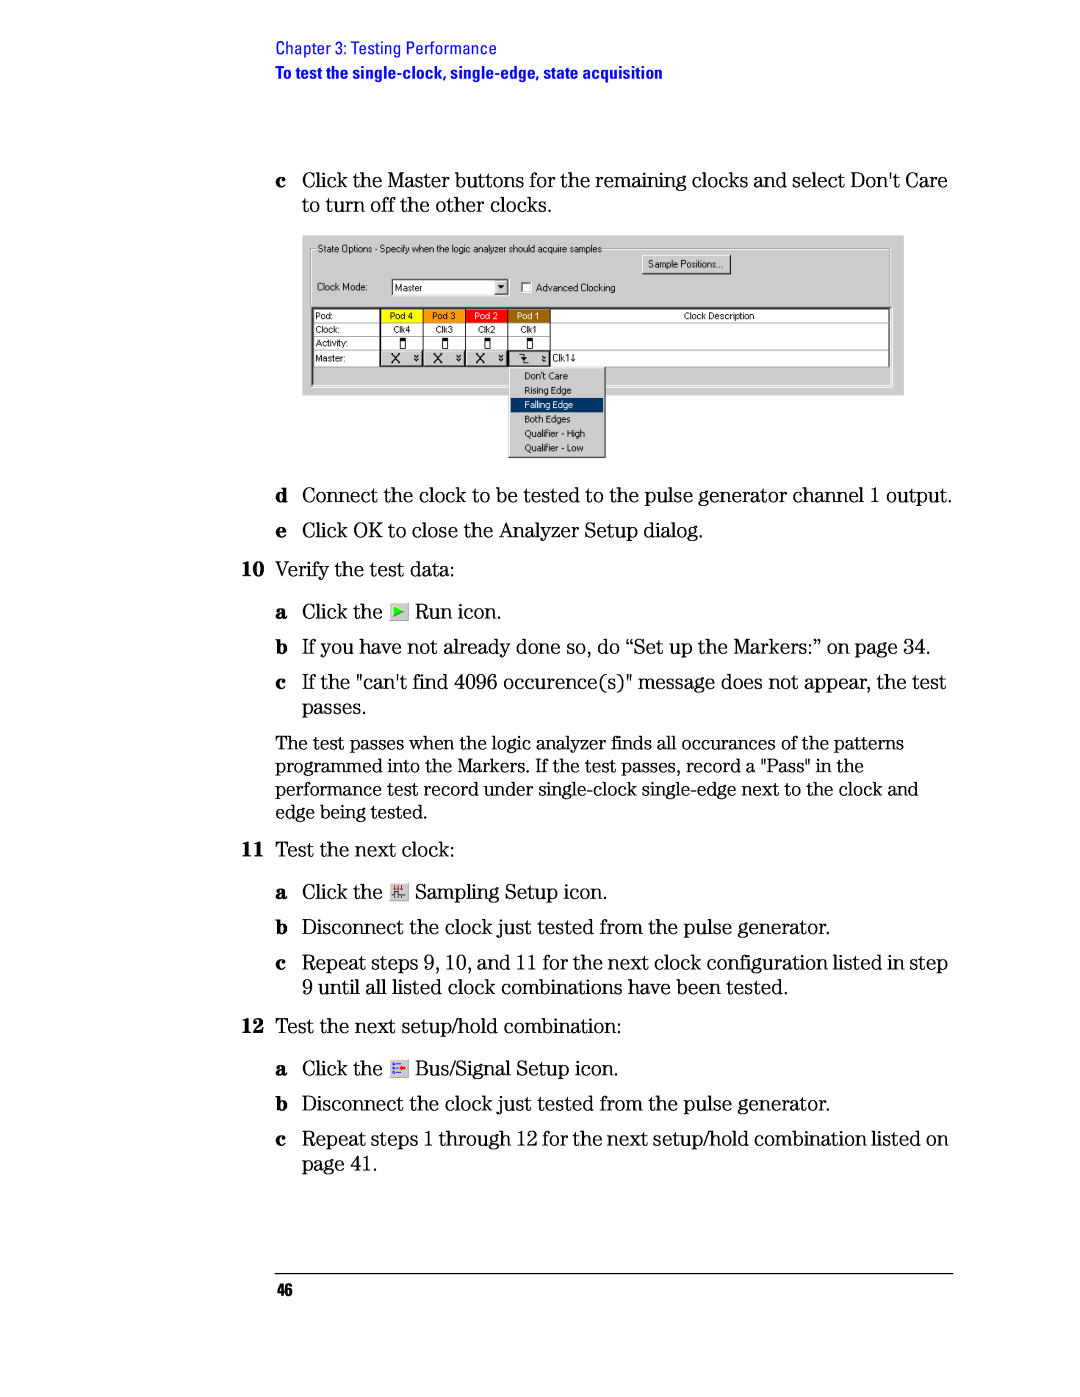 Agilent Technologies 1680, 1690 manual e Click OK to close the Analyzer Setup dialog 10 Verify the test data 